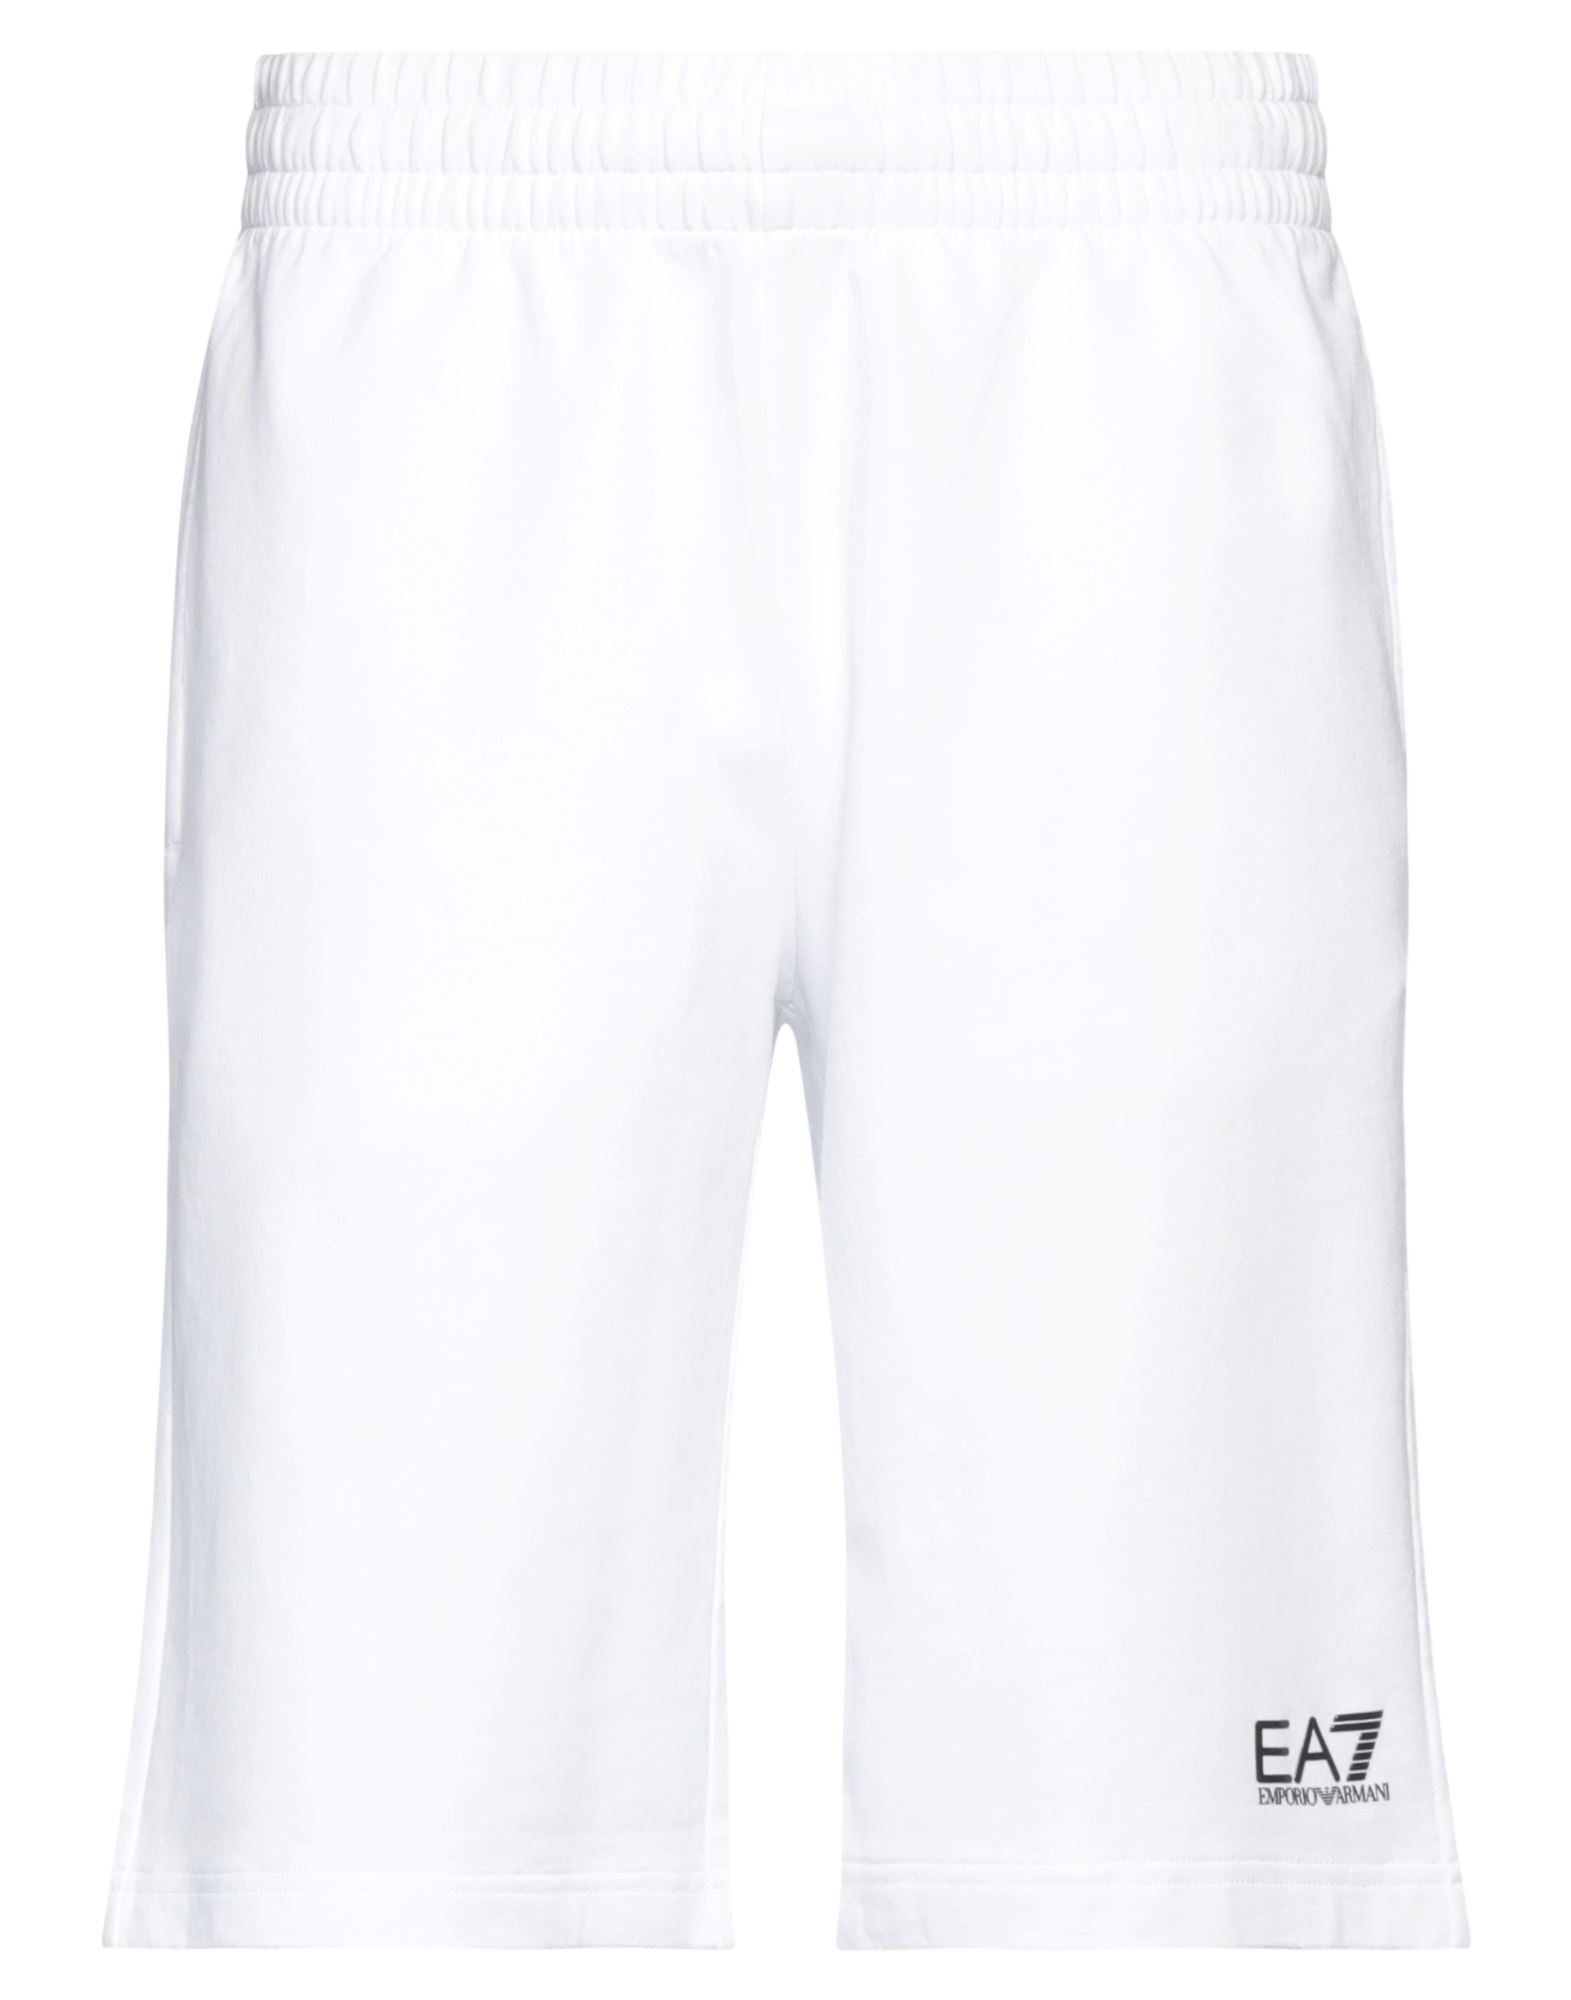 Ea7 Man Shorts & Bermuda Shorts White Size Xs Cotton